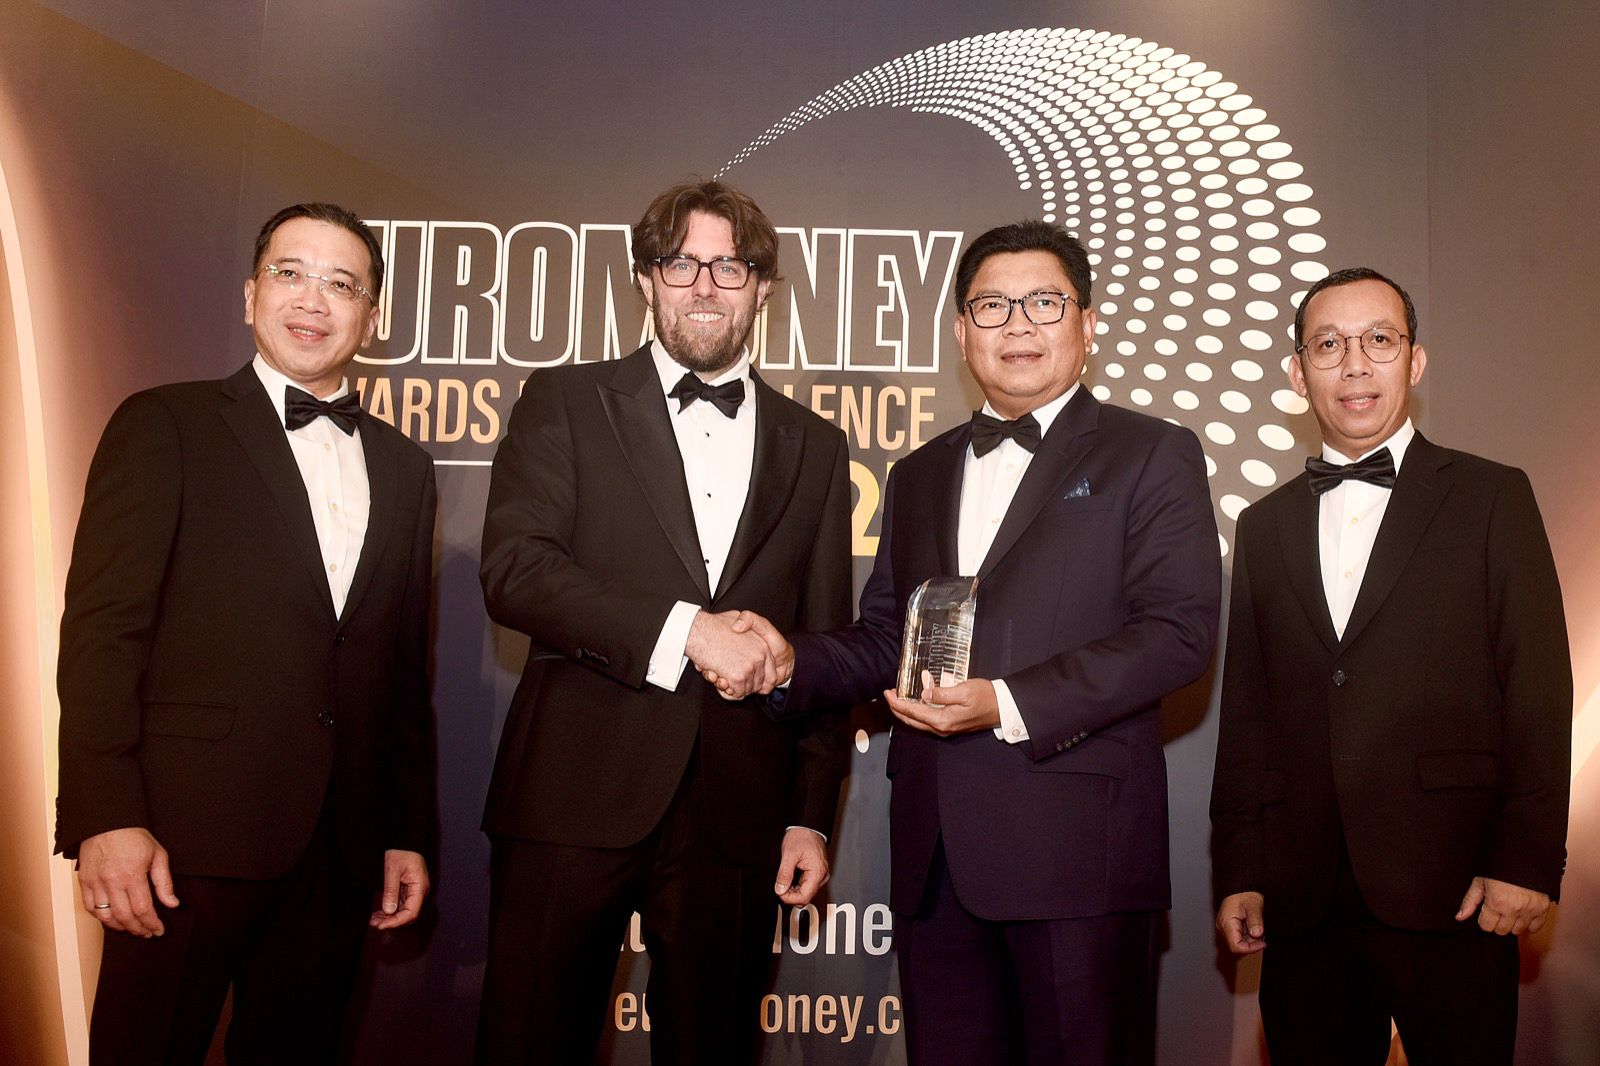 SAH Jadi Bank Terbaik! Bank Mandiri Raih Penghargaan International di Hong Kong